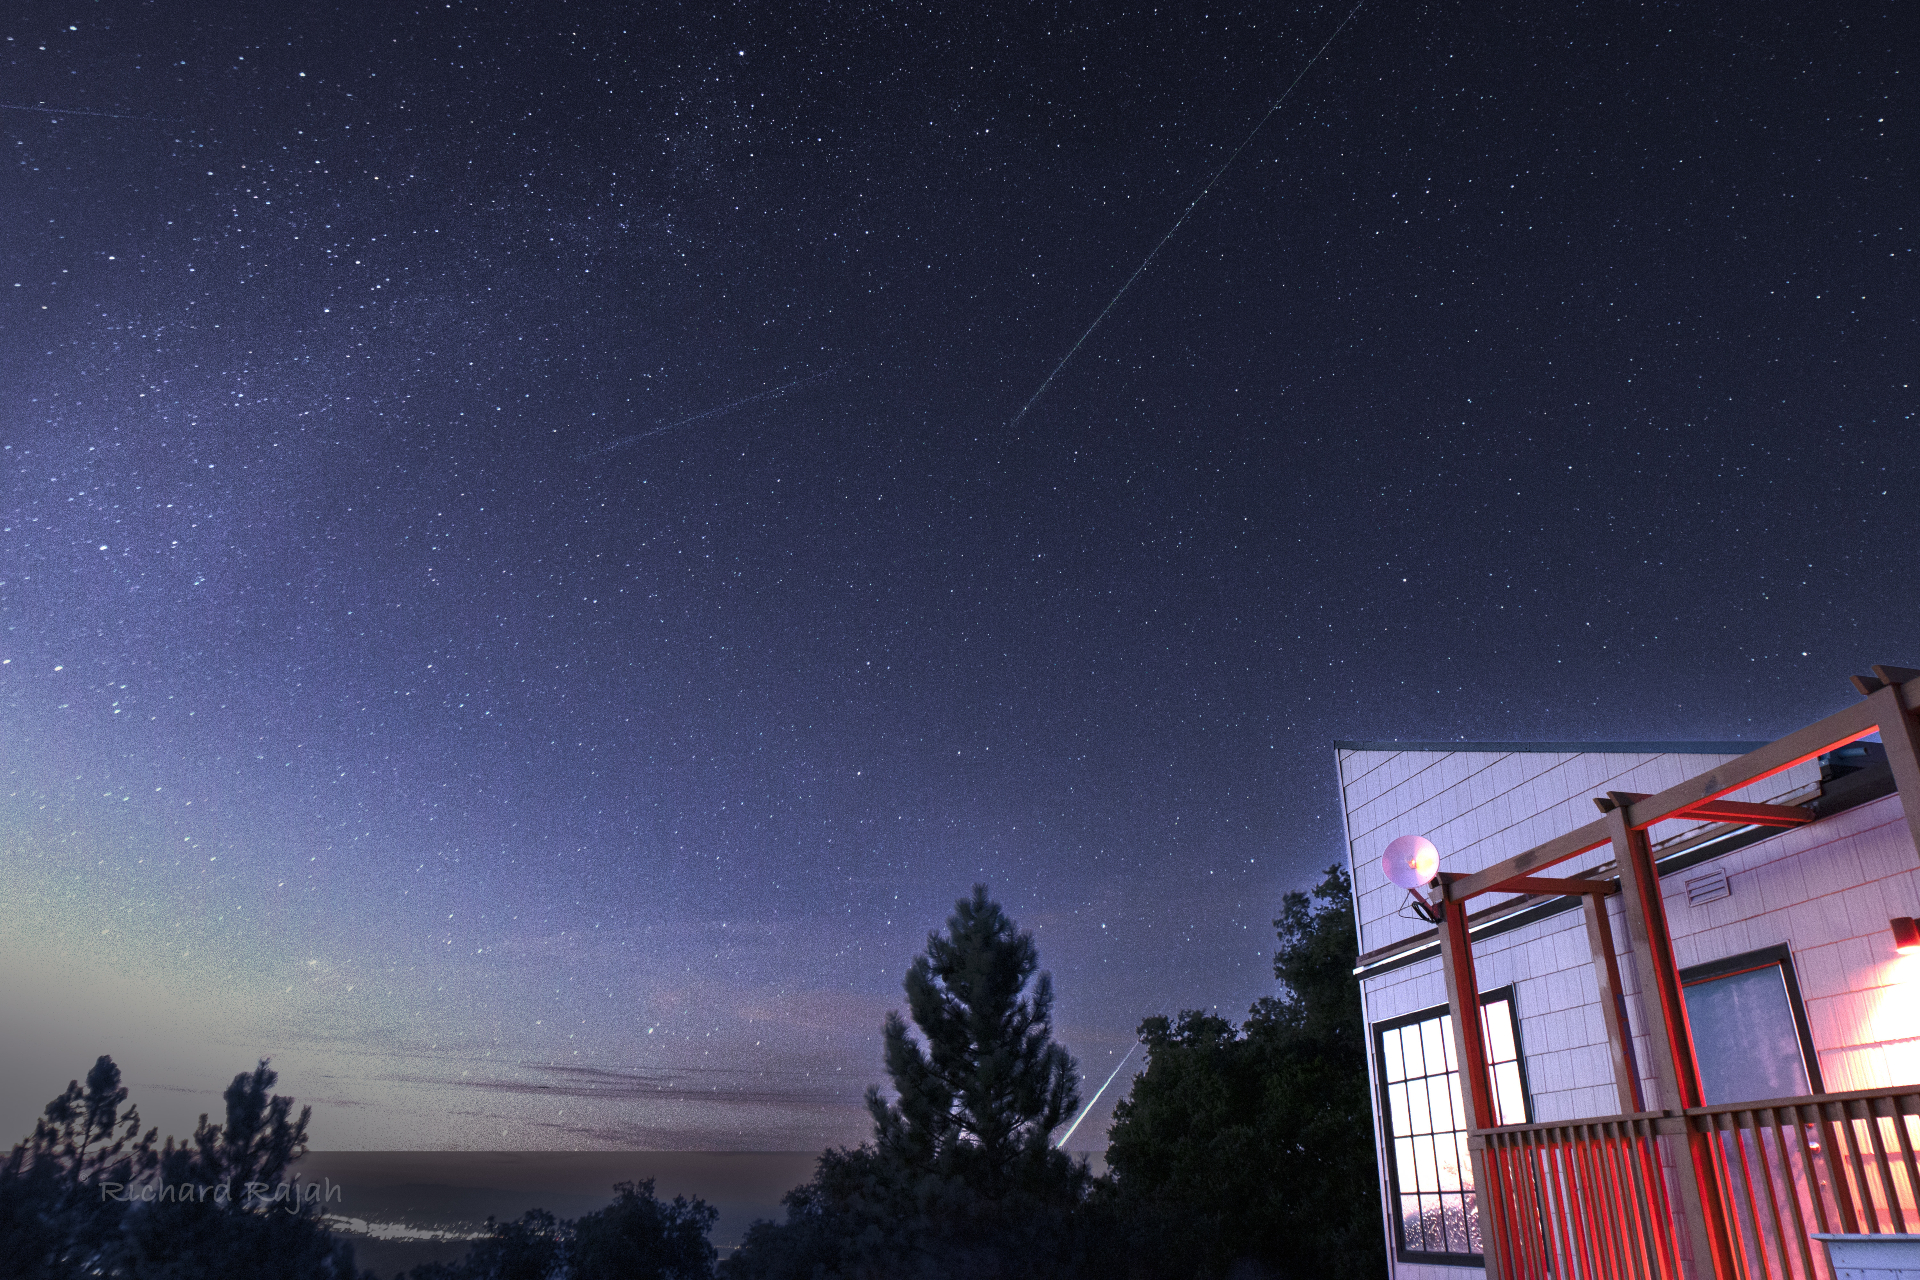 Los meteoritos surcan el cielo y una brillante bola de fuego se desliza detrás de los árboles en la parte inferior de la imagen.  Un edificio iluminado está a la derecha de la foto.